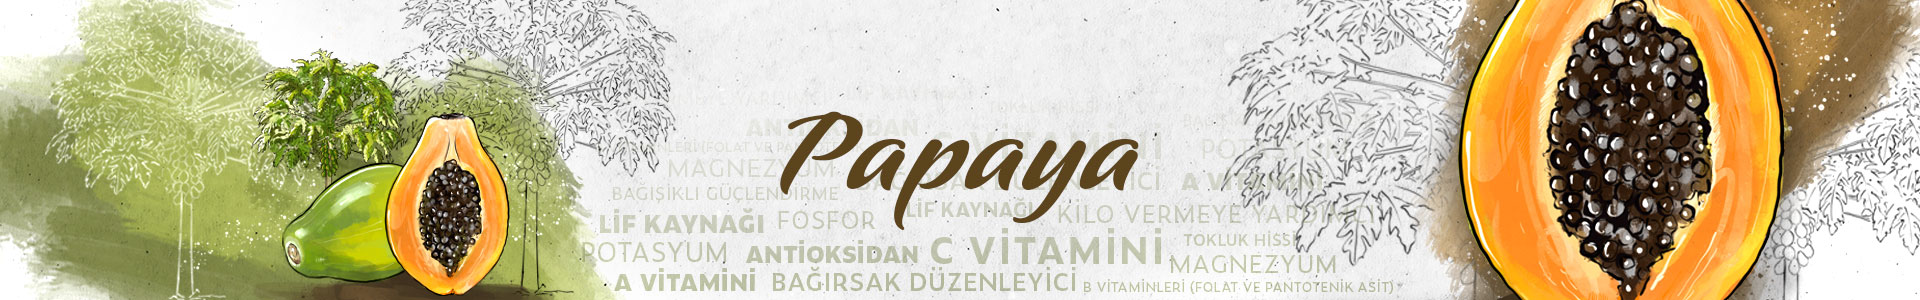 PAPAYA-SLIDER